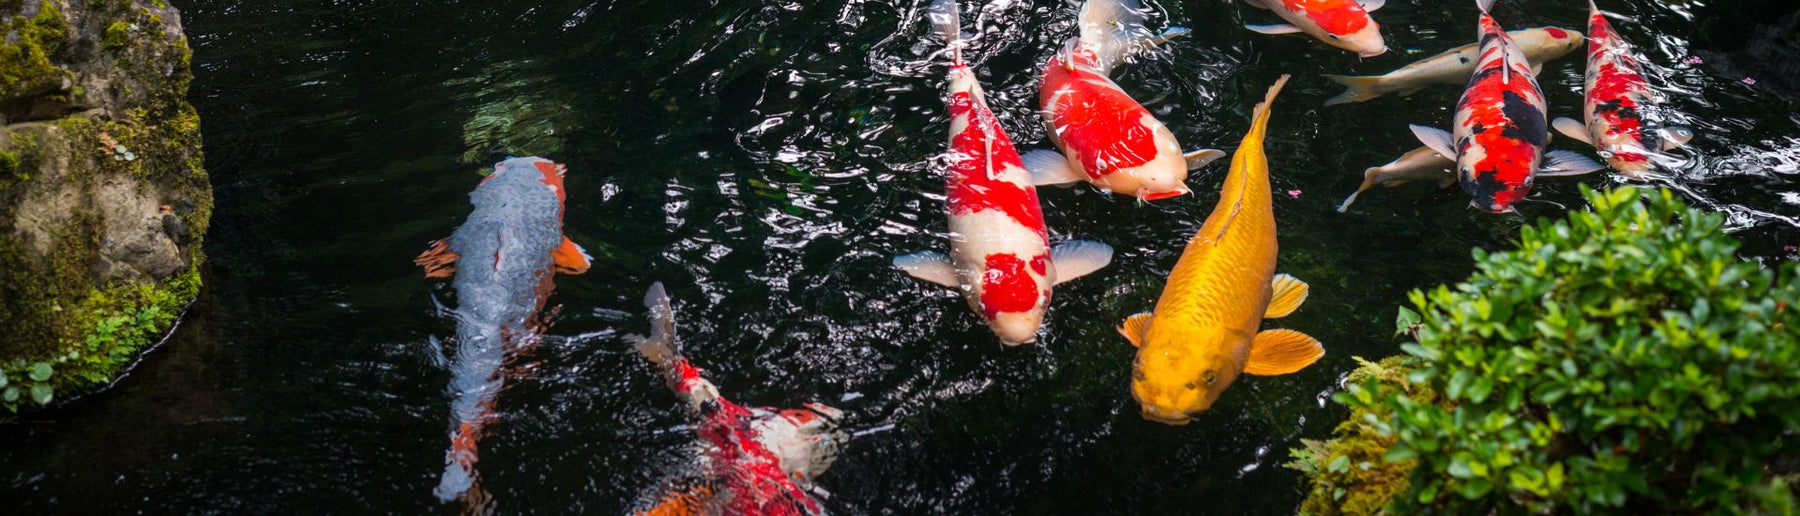 דגי קוי: לצלול לתוך עולמם המרתק - מסע של יופי וסמליות - בית הובי אונליין